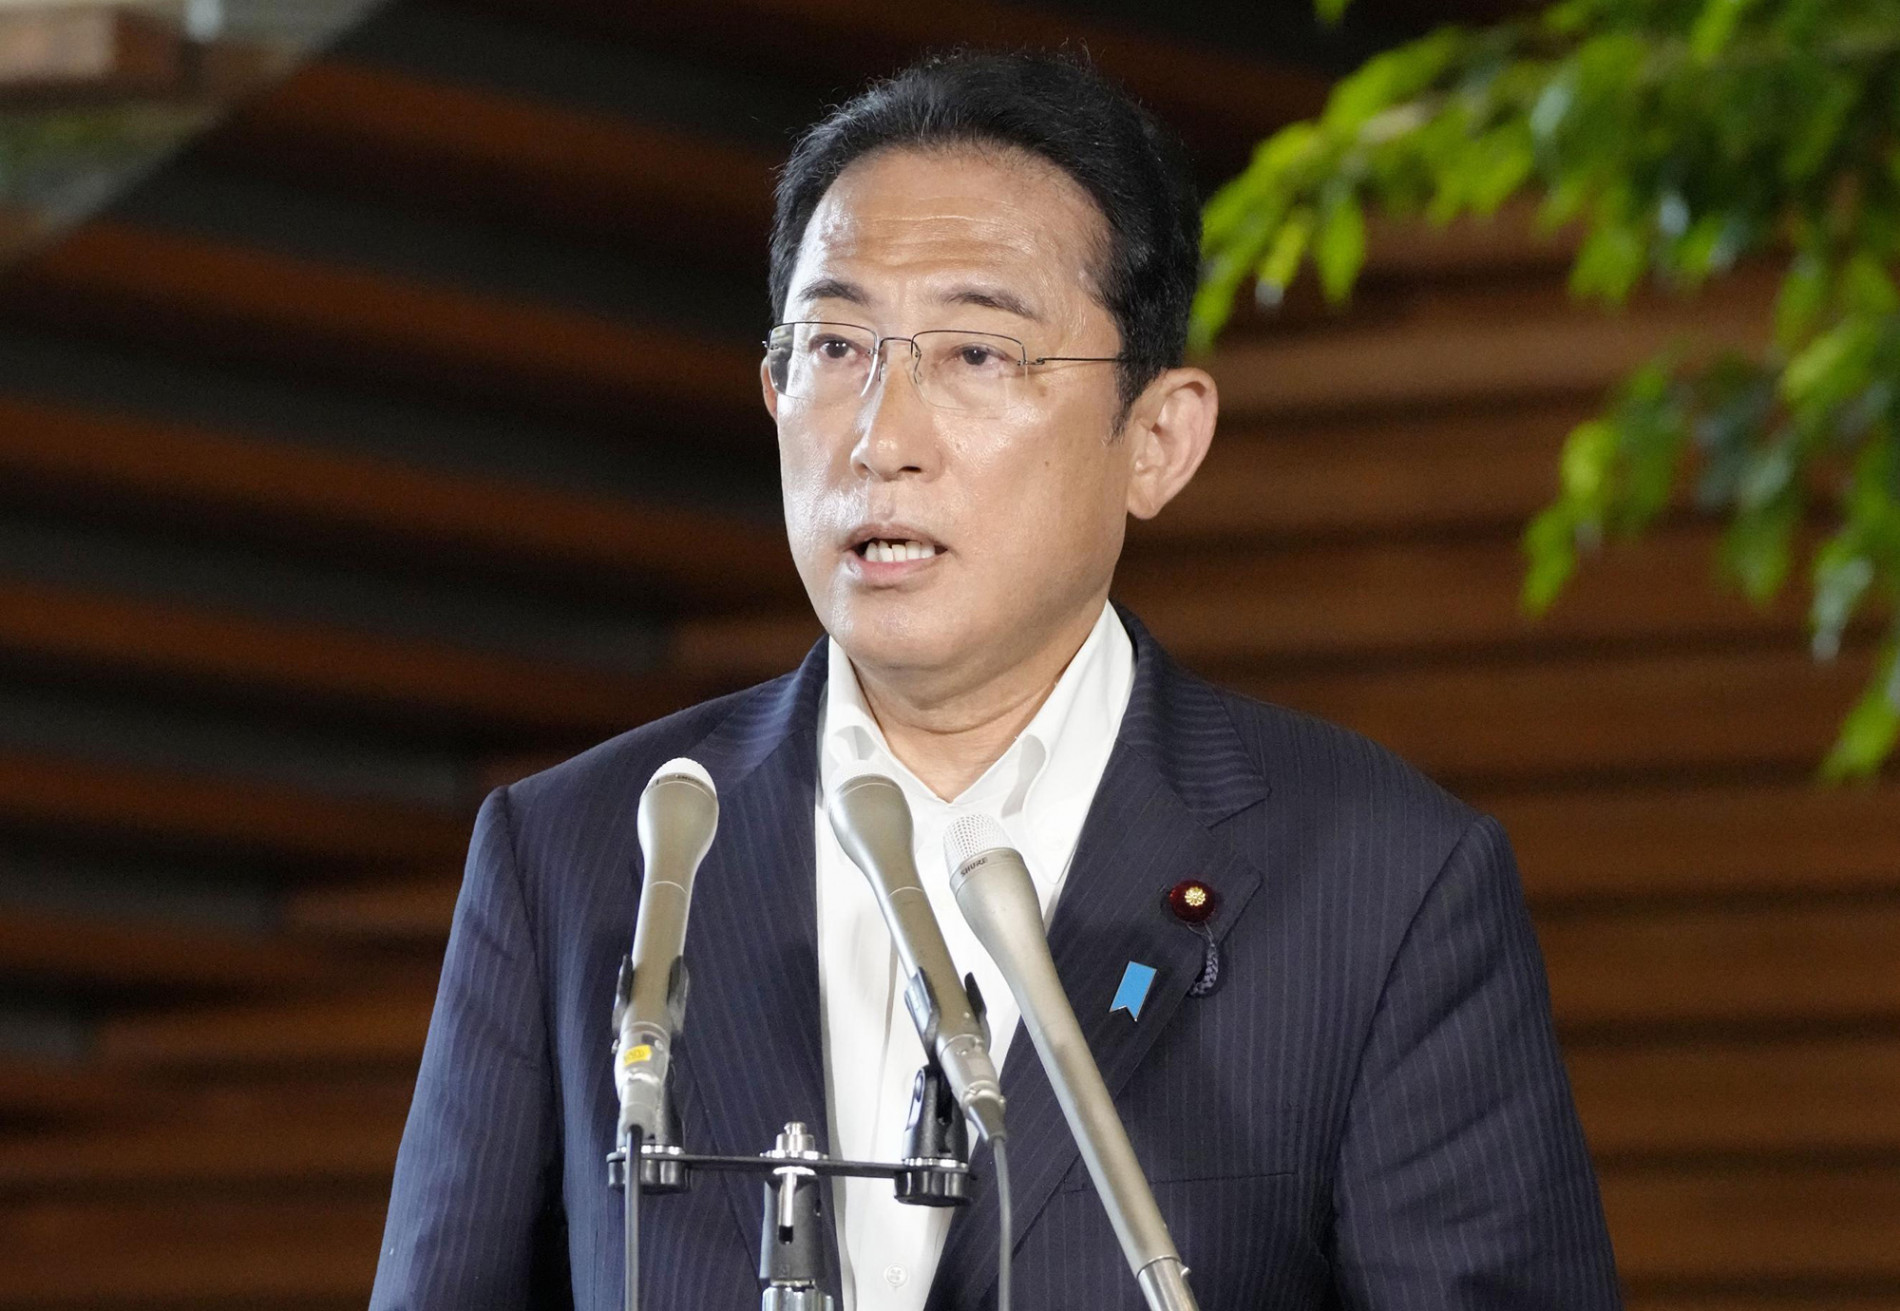 Cựu thủ tướng Abe Shinzo đã qua đời sau khi bị bắn - Ảnh 2.